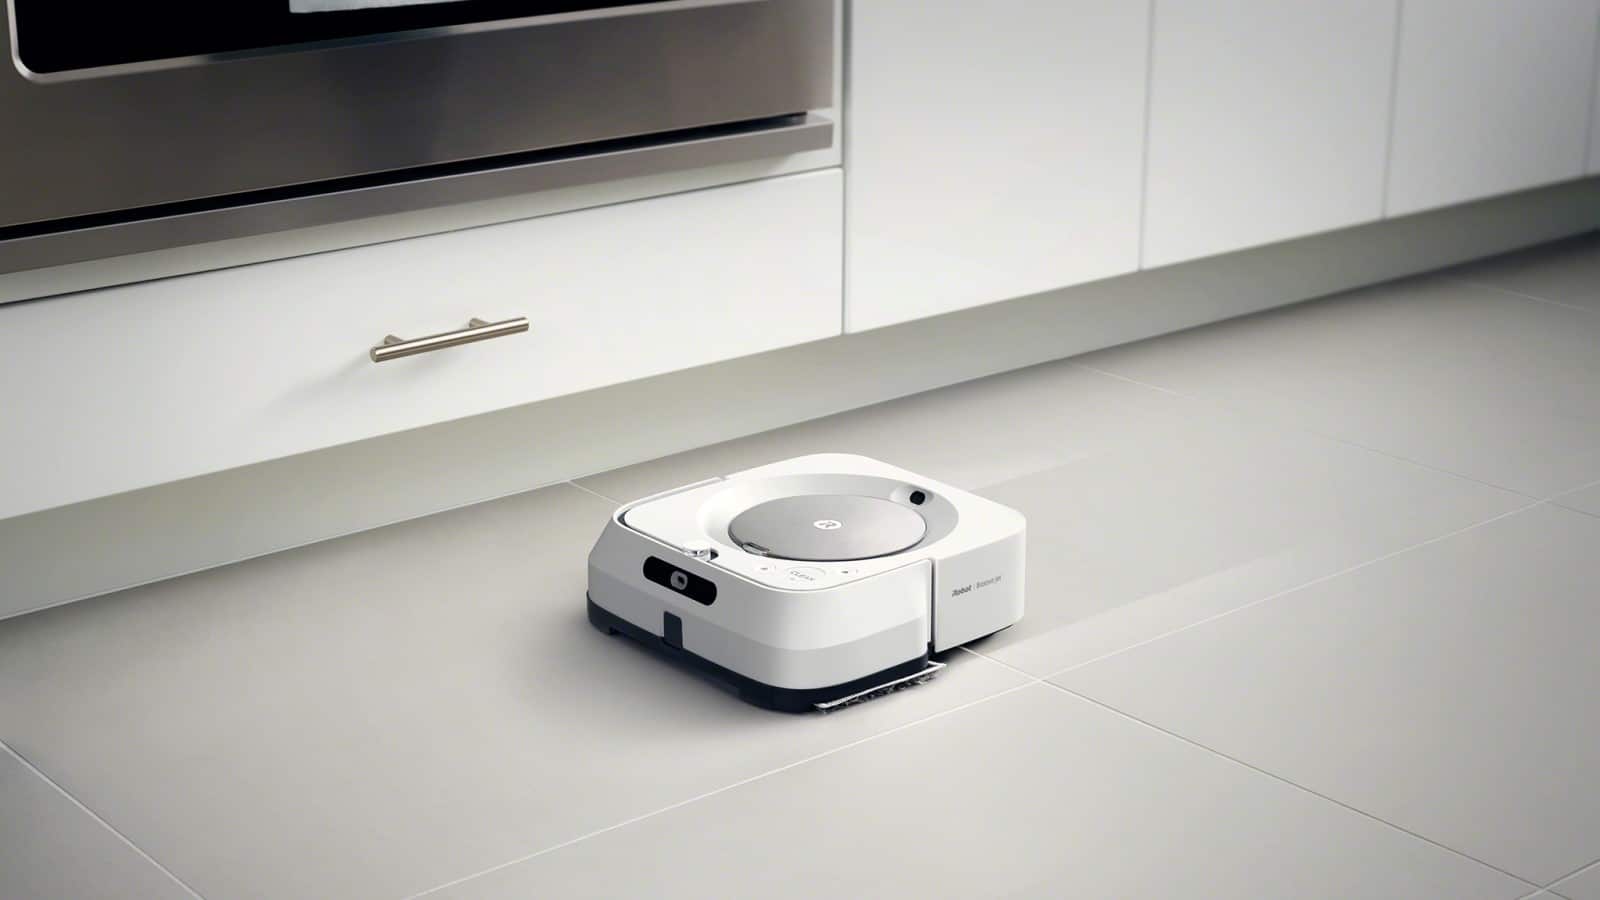 ممسحة روبوت braava m6 لتنظيف أرضية المطبخ